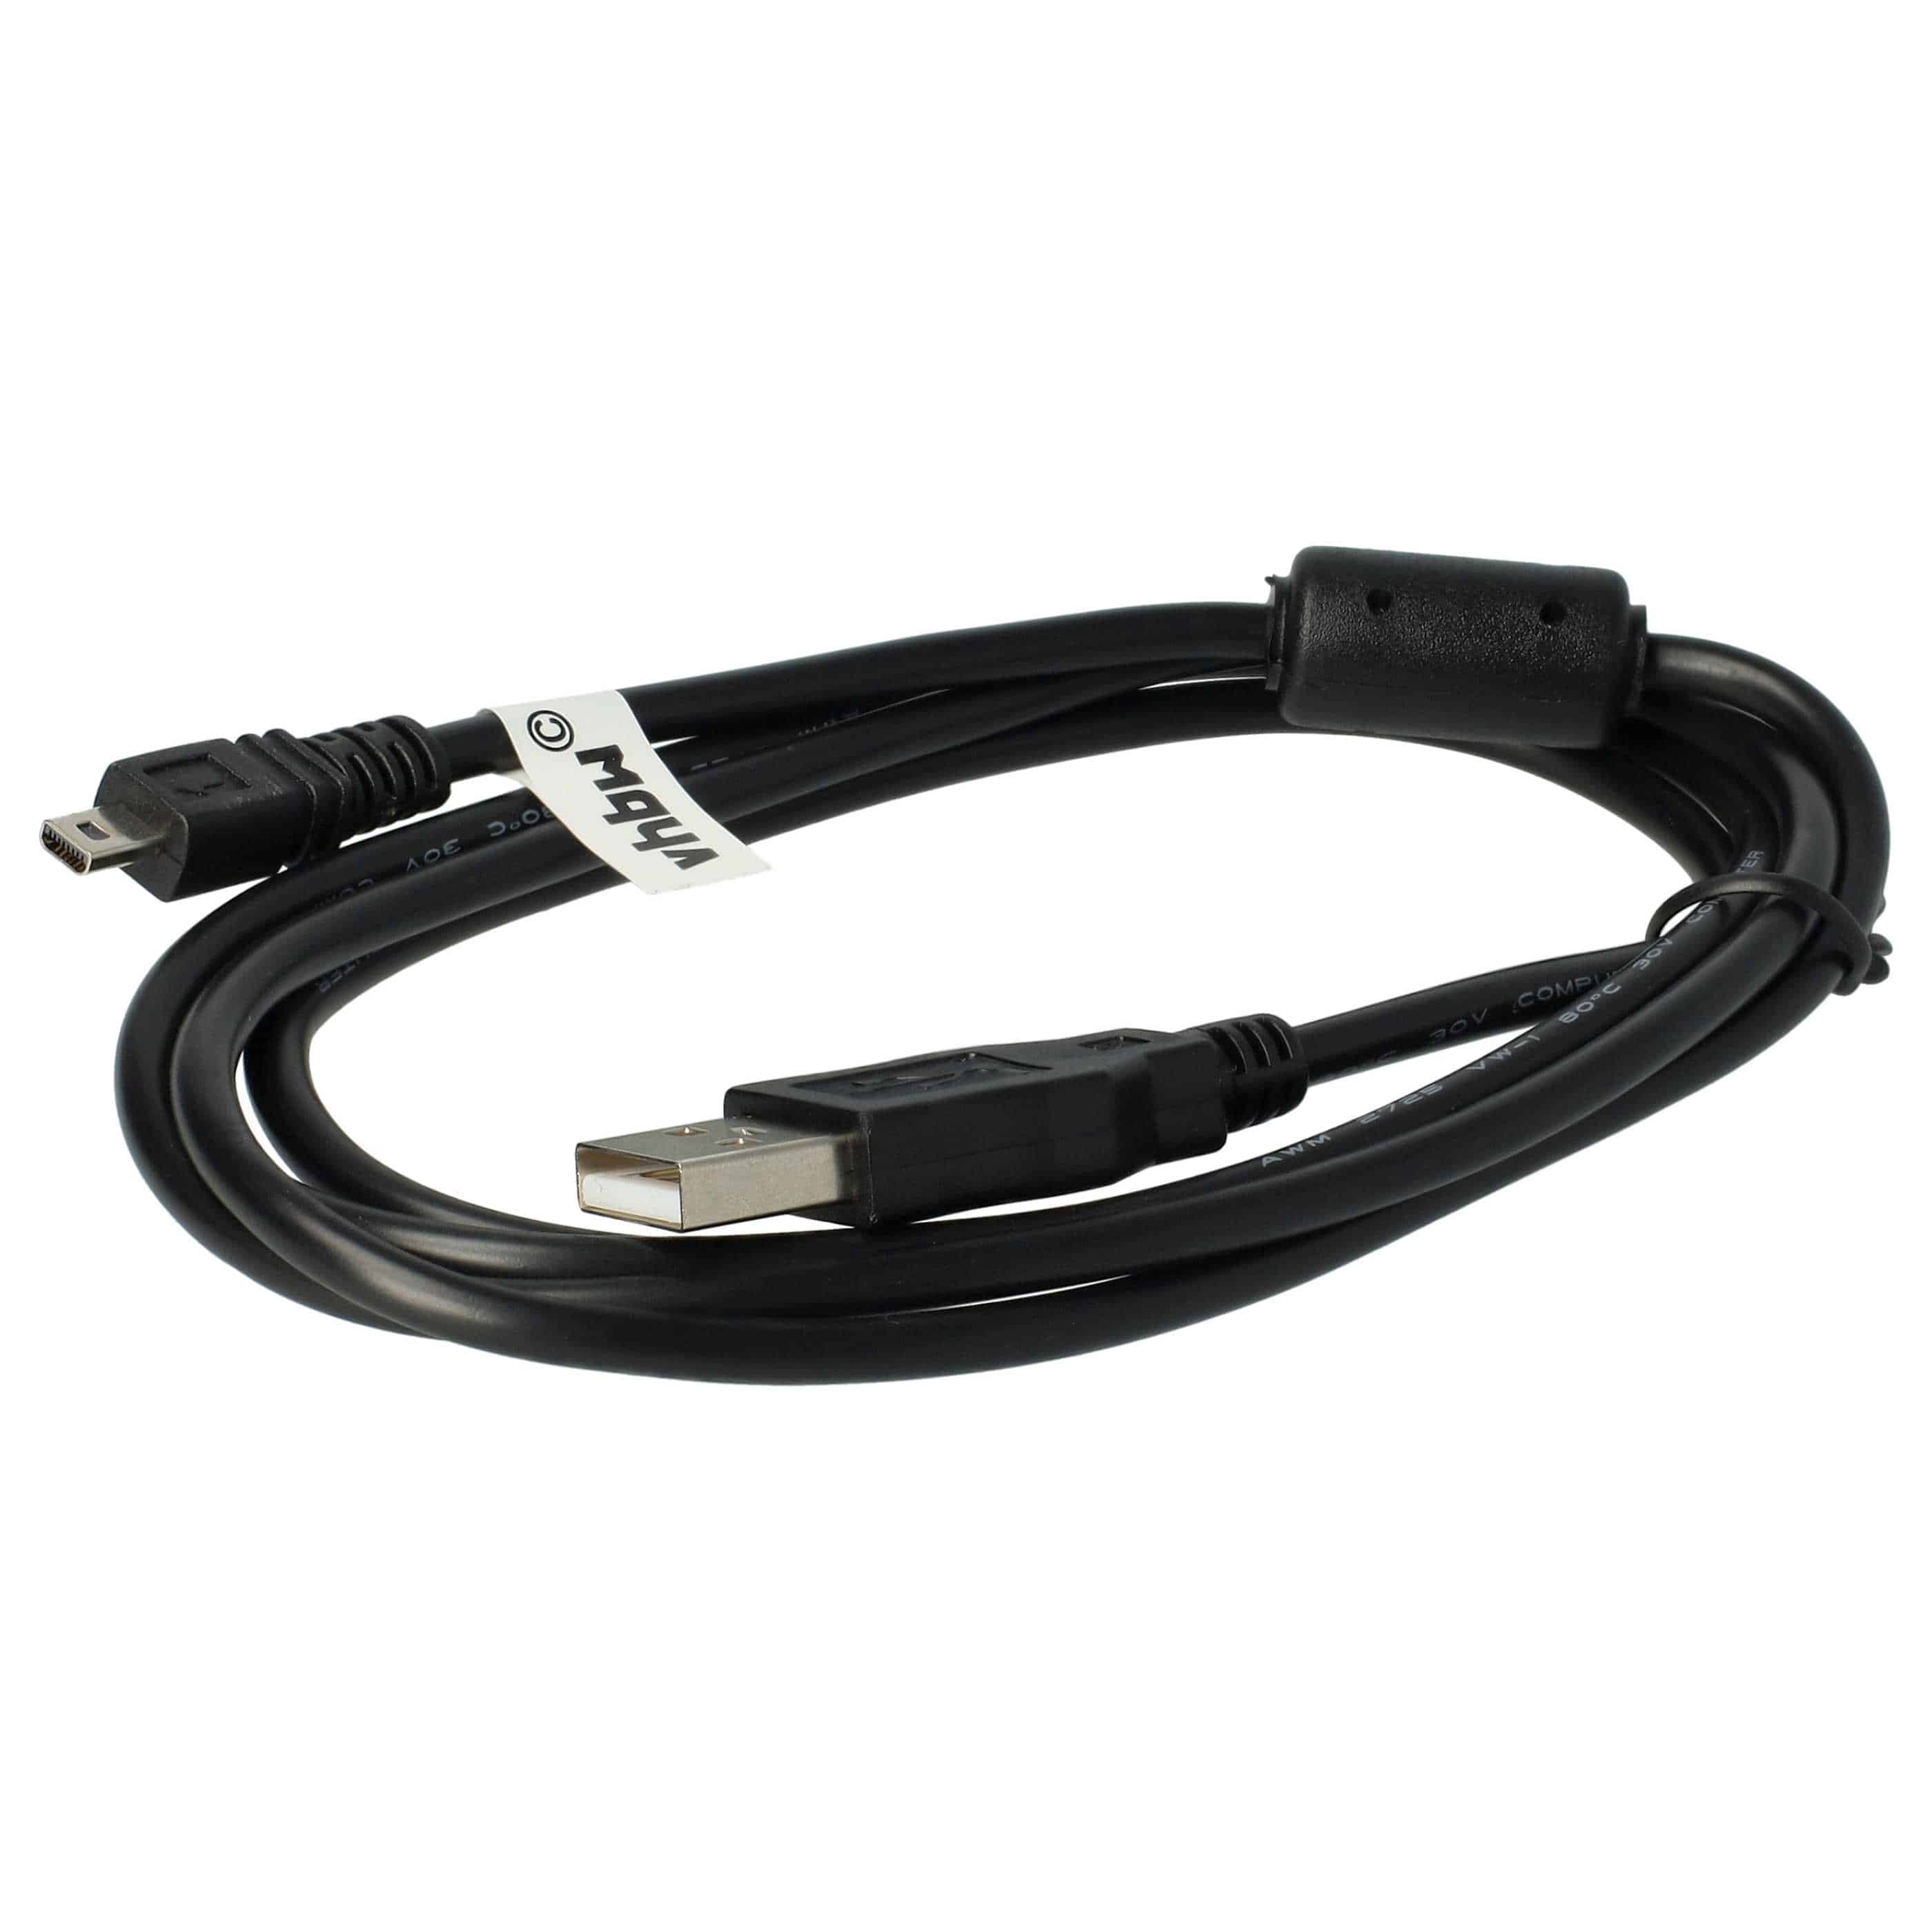 USB Datenkabel als Ersatz für Casio EMC-5U für Kamera u.a. - 150 cm